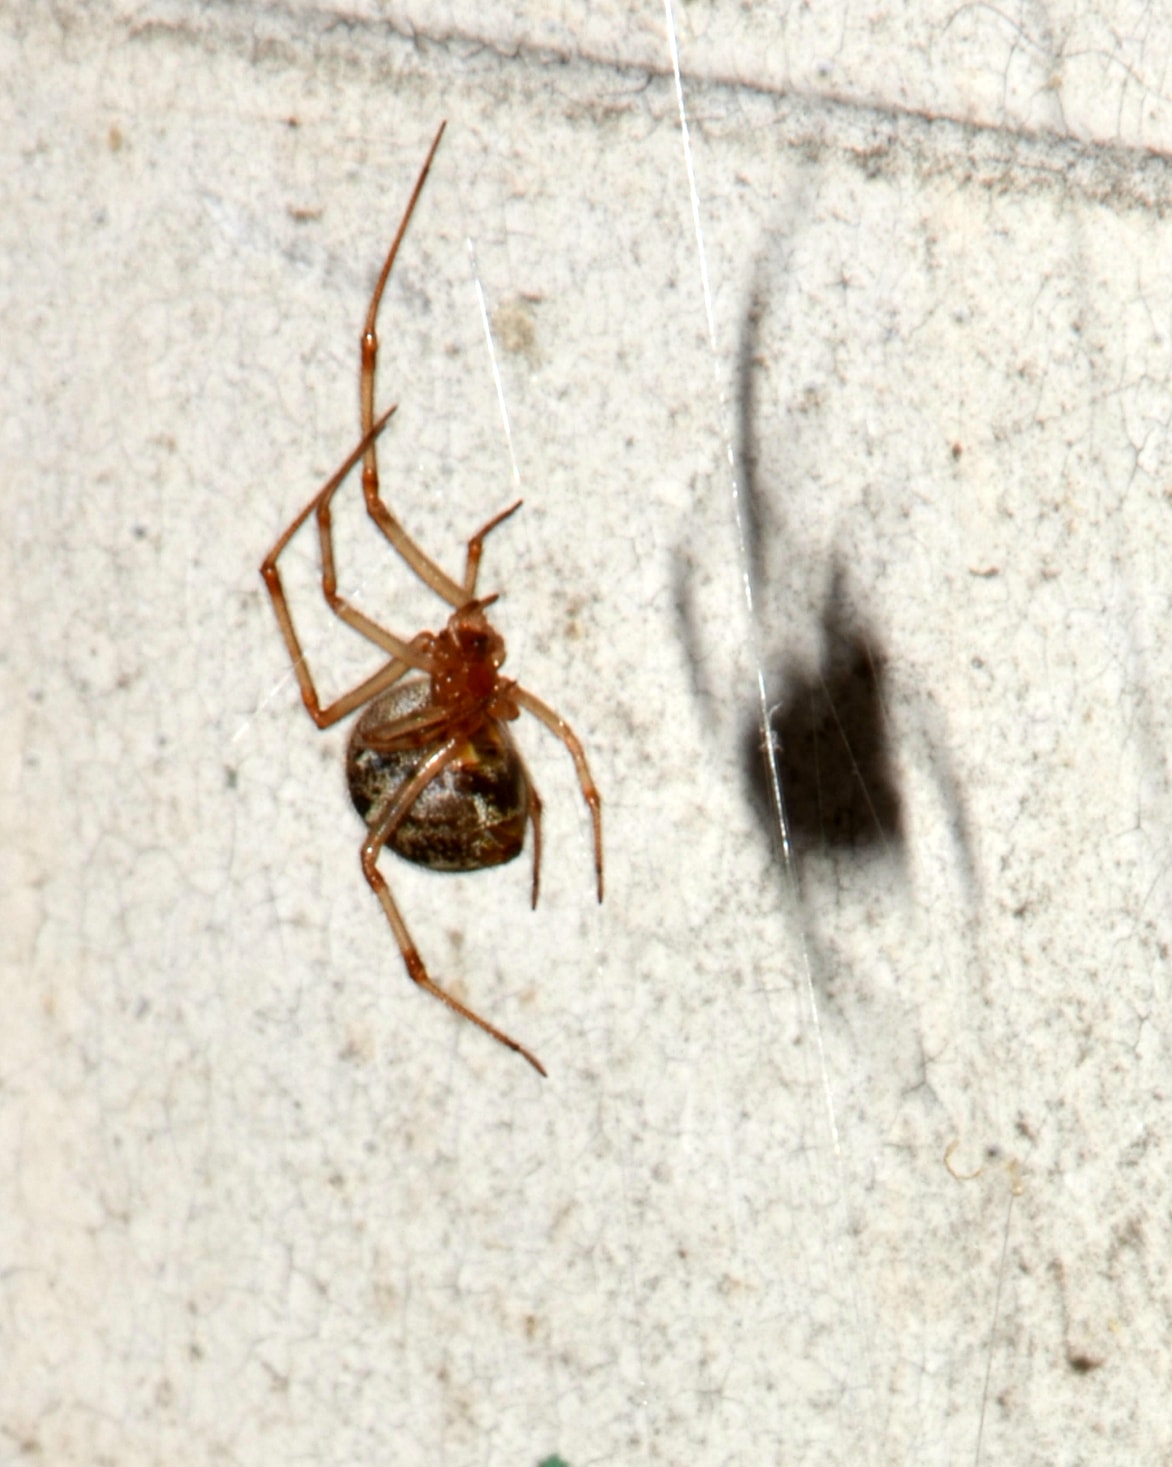 Picture of Parasteatoda tepidariorum (Common House Spider) - Ventral